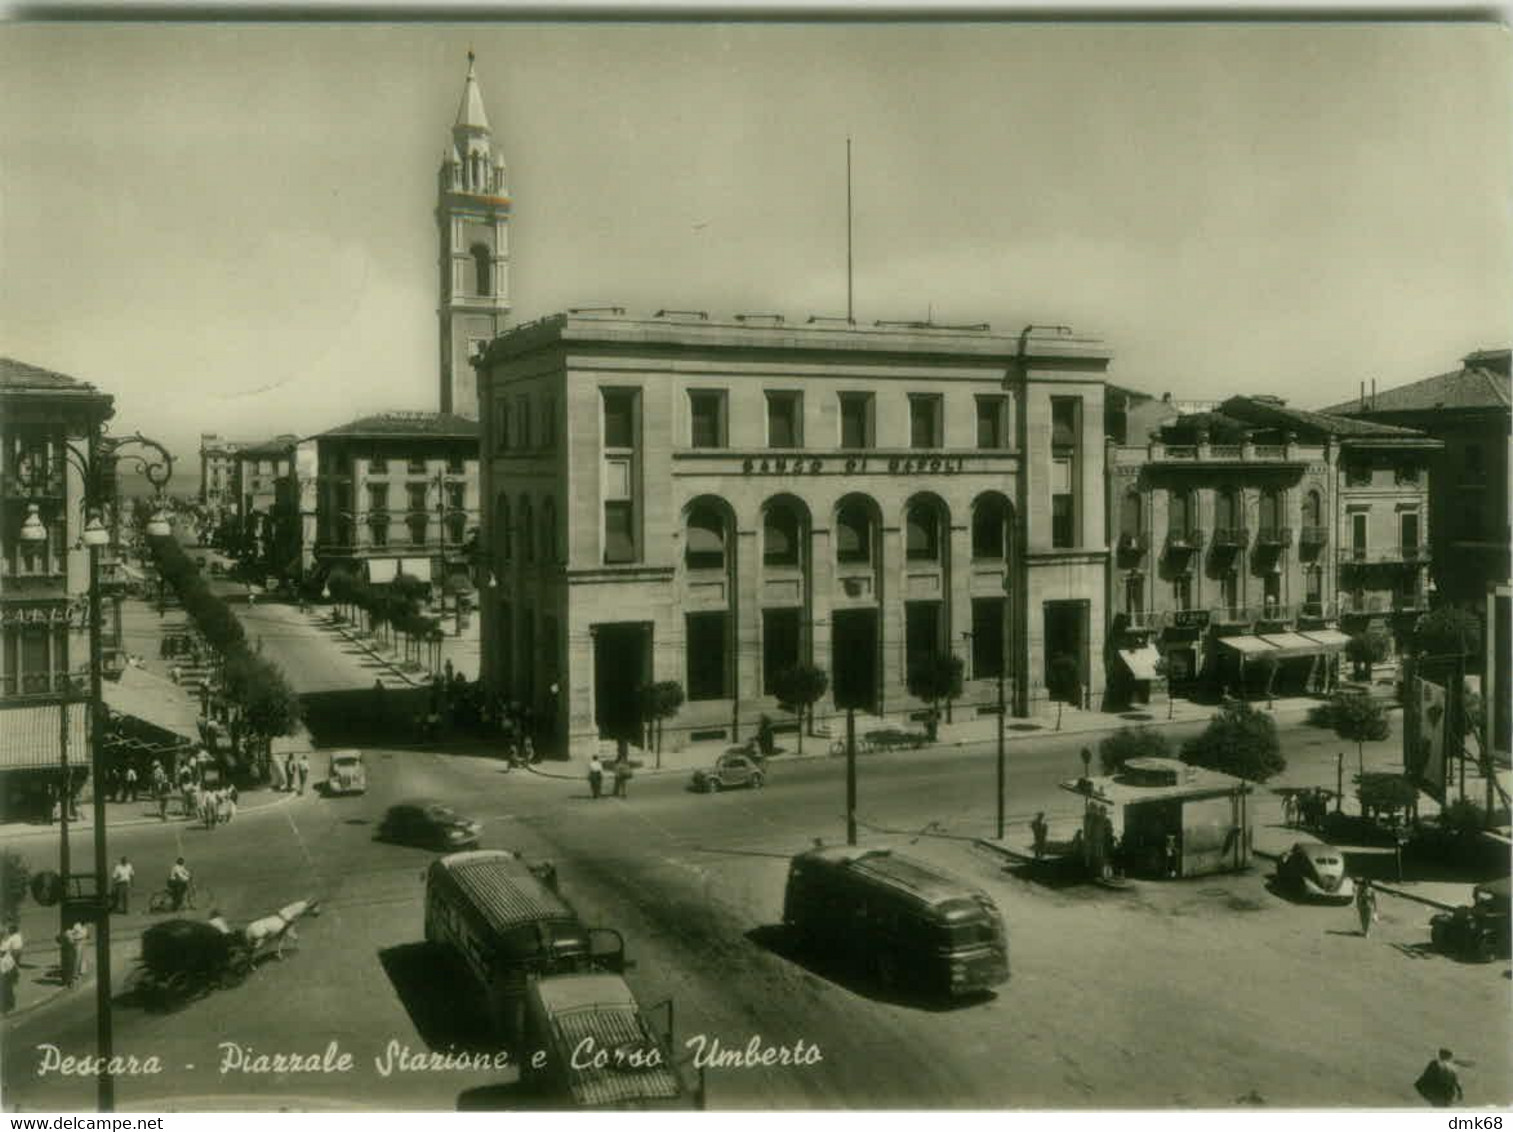 PESCARA - PIAZZALE STAZIONE E CORSO UMBERTO - EDIZIONE SANTILLI - SPEDITA 1954 (8476) - Pescara